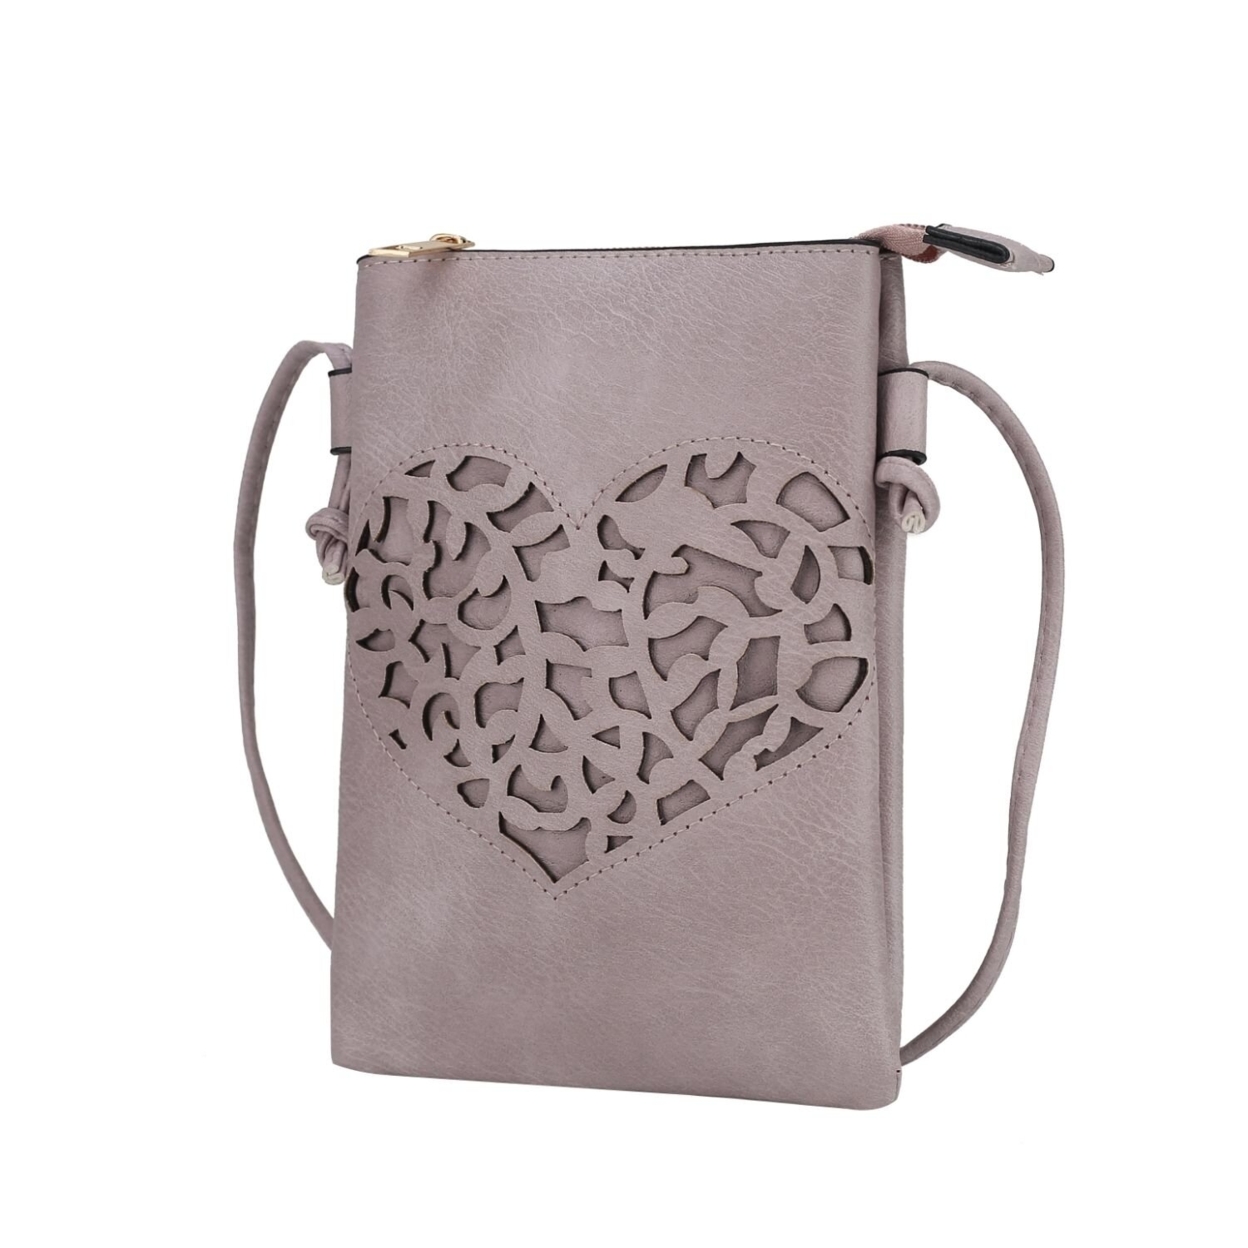 MKF Collection Heartly Crossbody Handbag By Mia K. - Lilac